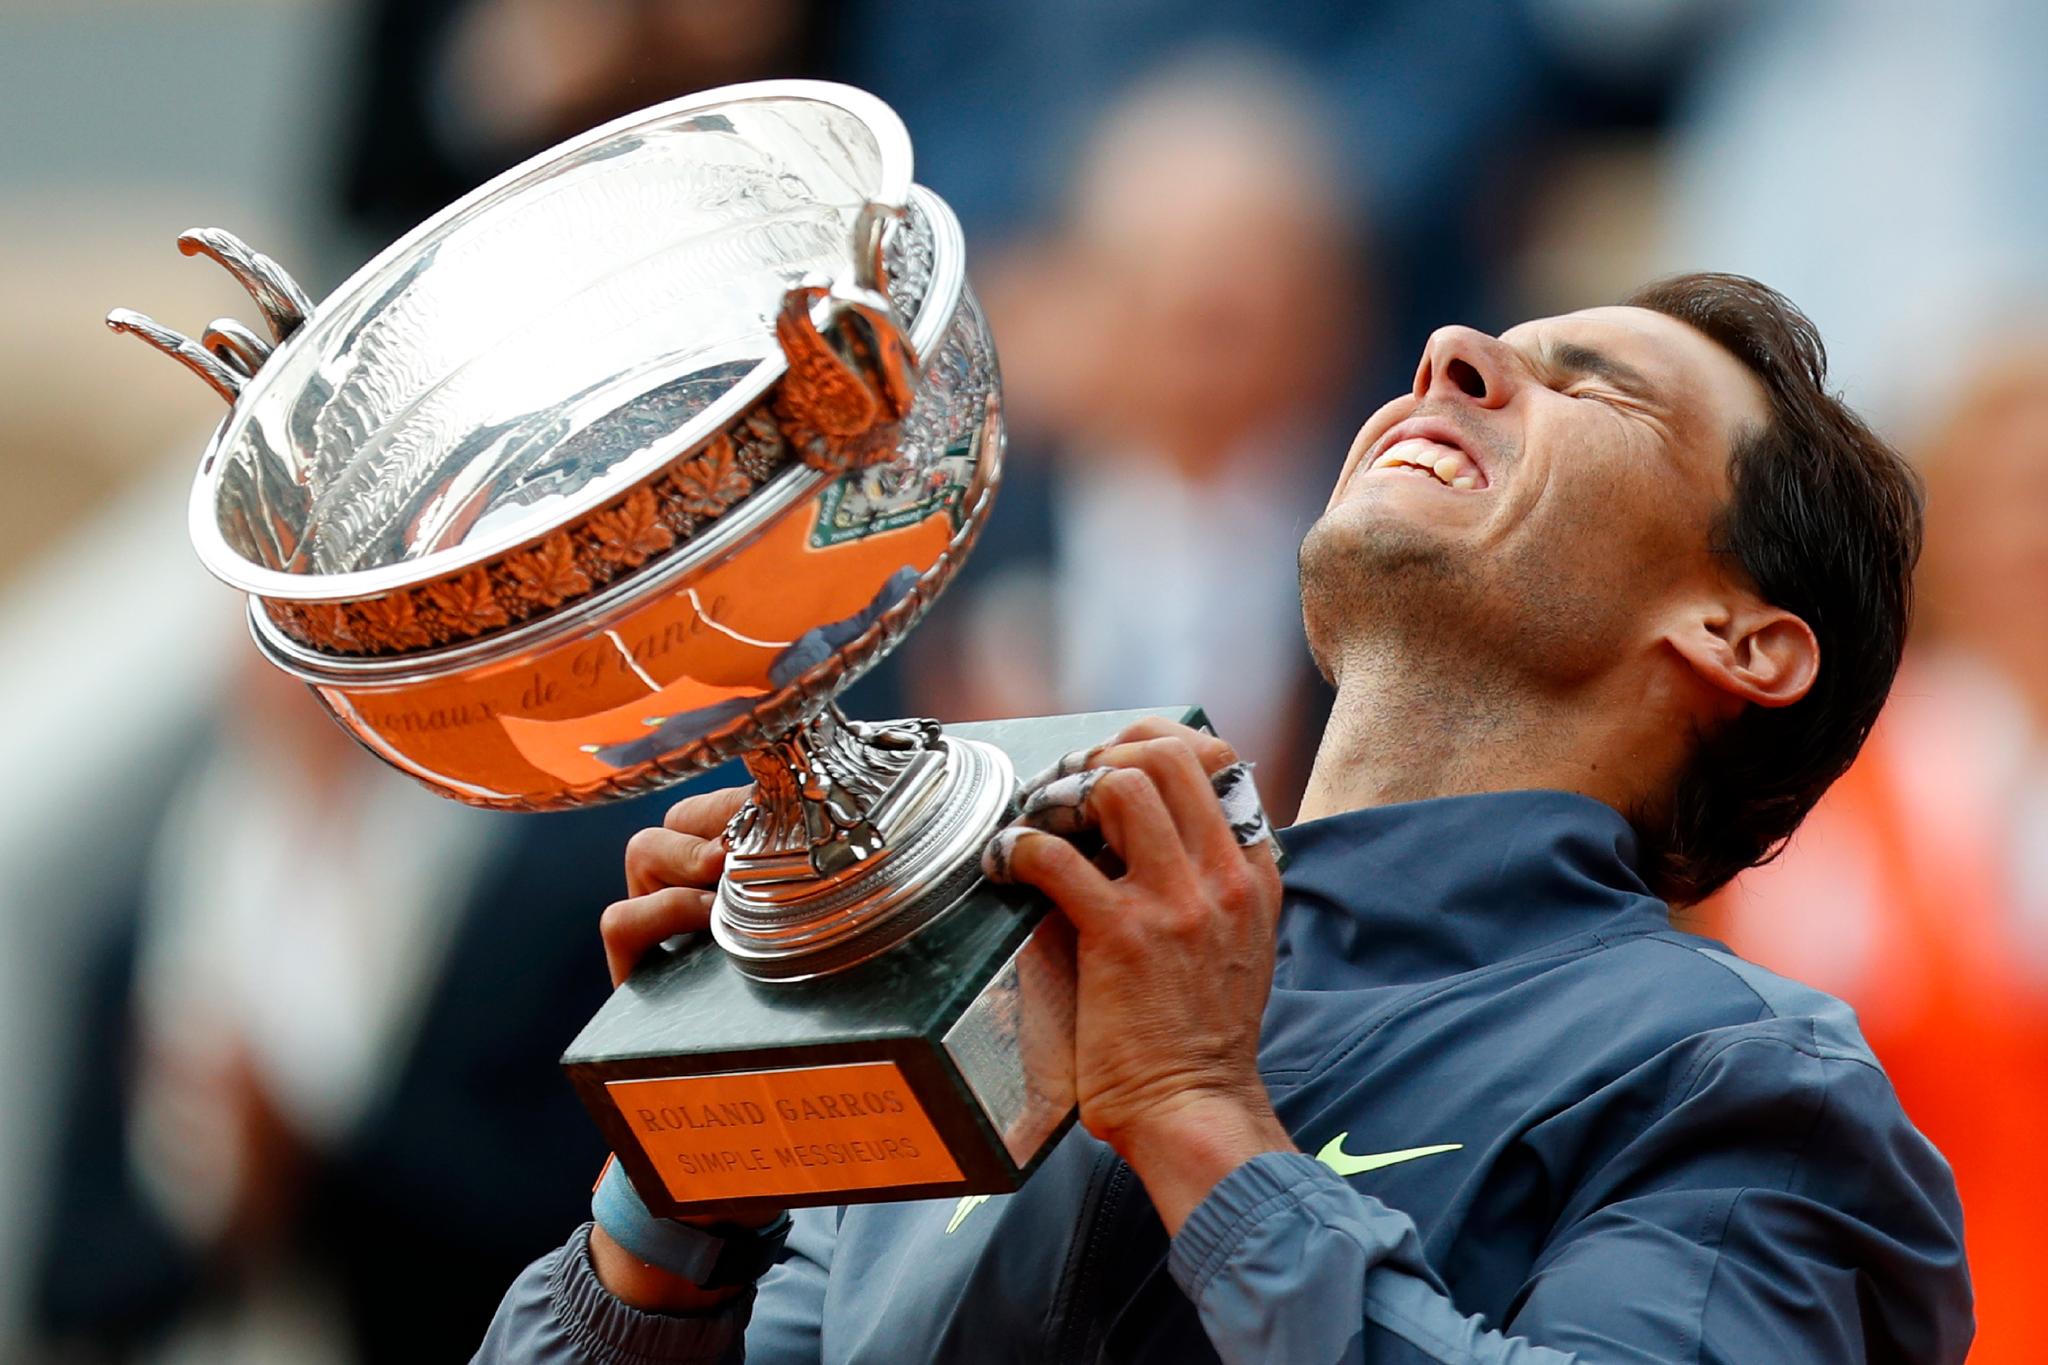 GRUSKONGEN: Nadal har løftet trofeet i Frankrike 13 ganger, senest i 2020. Totalt har han vunnet 21 Grand Slams.